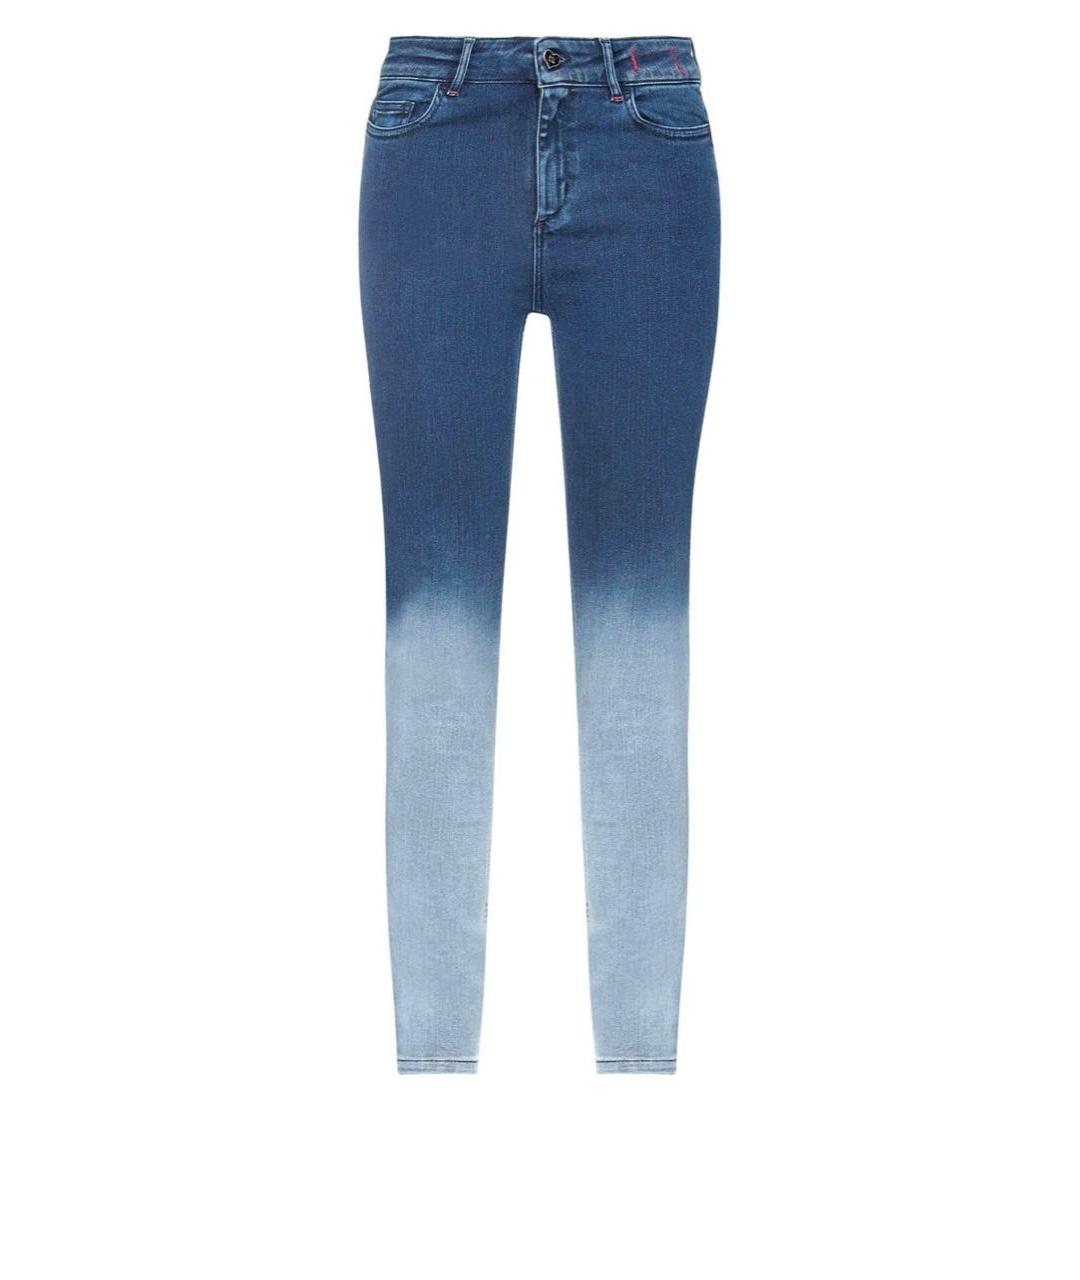 TWIN-SET Синие хлопковые джинсы слим, фото 1